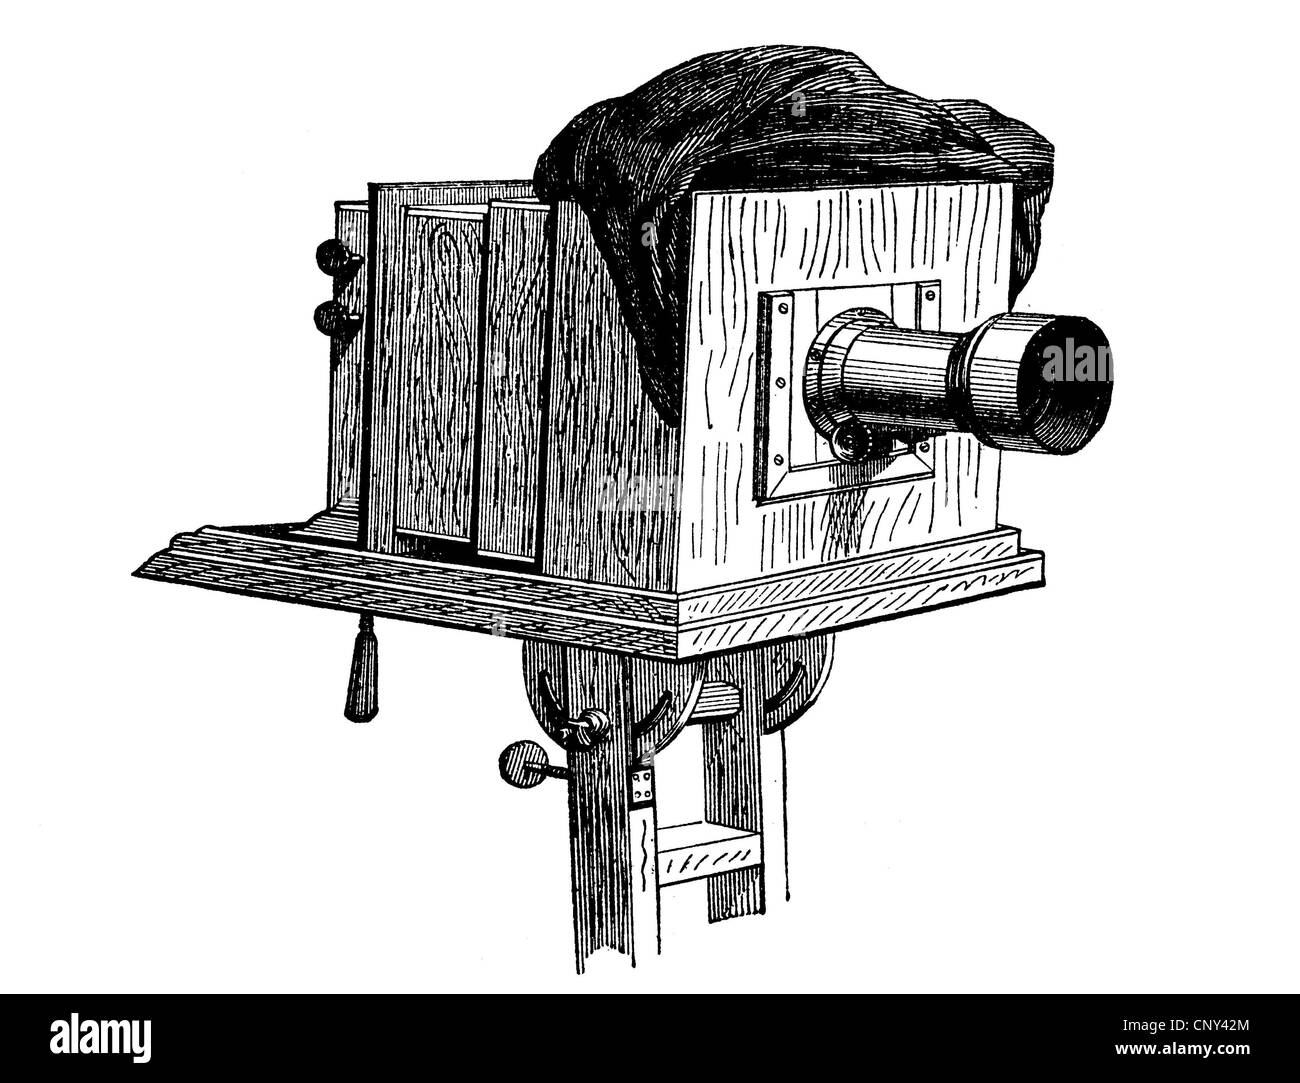 Appareil photo, caméra, historique de la gravure sur bois, vers 1888 Banque D'Images